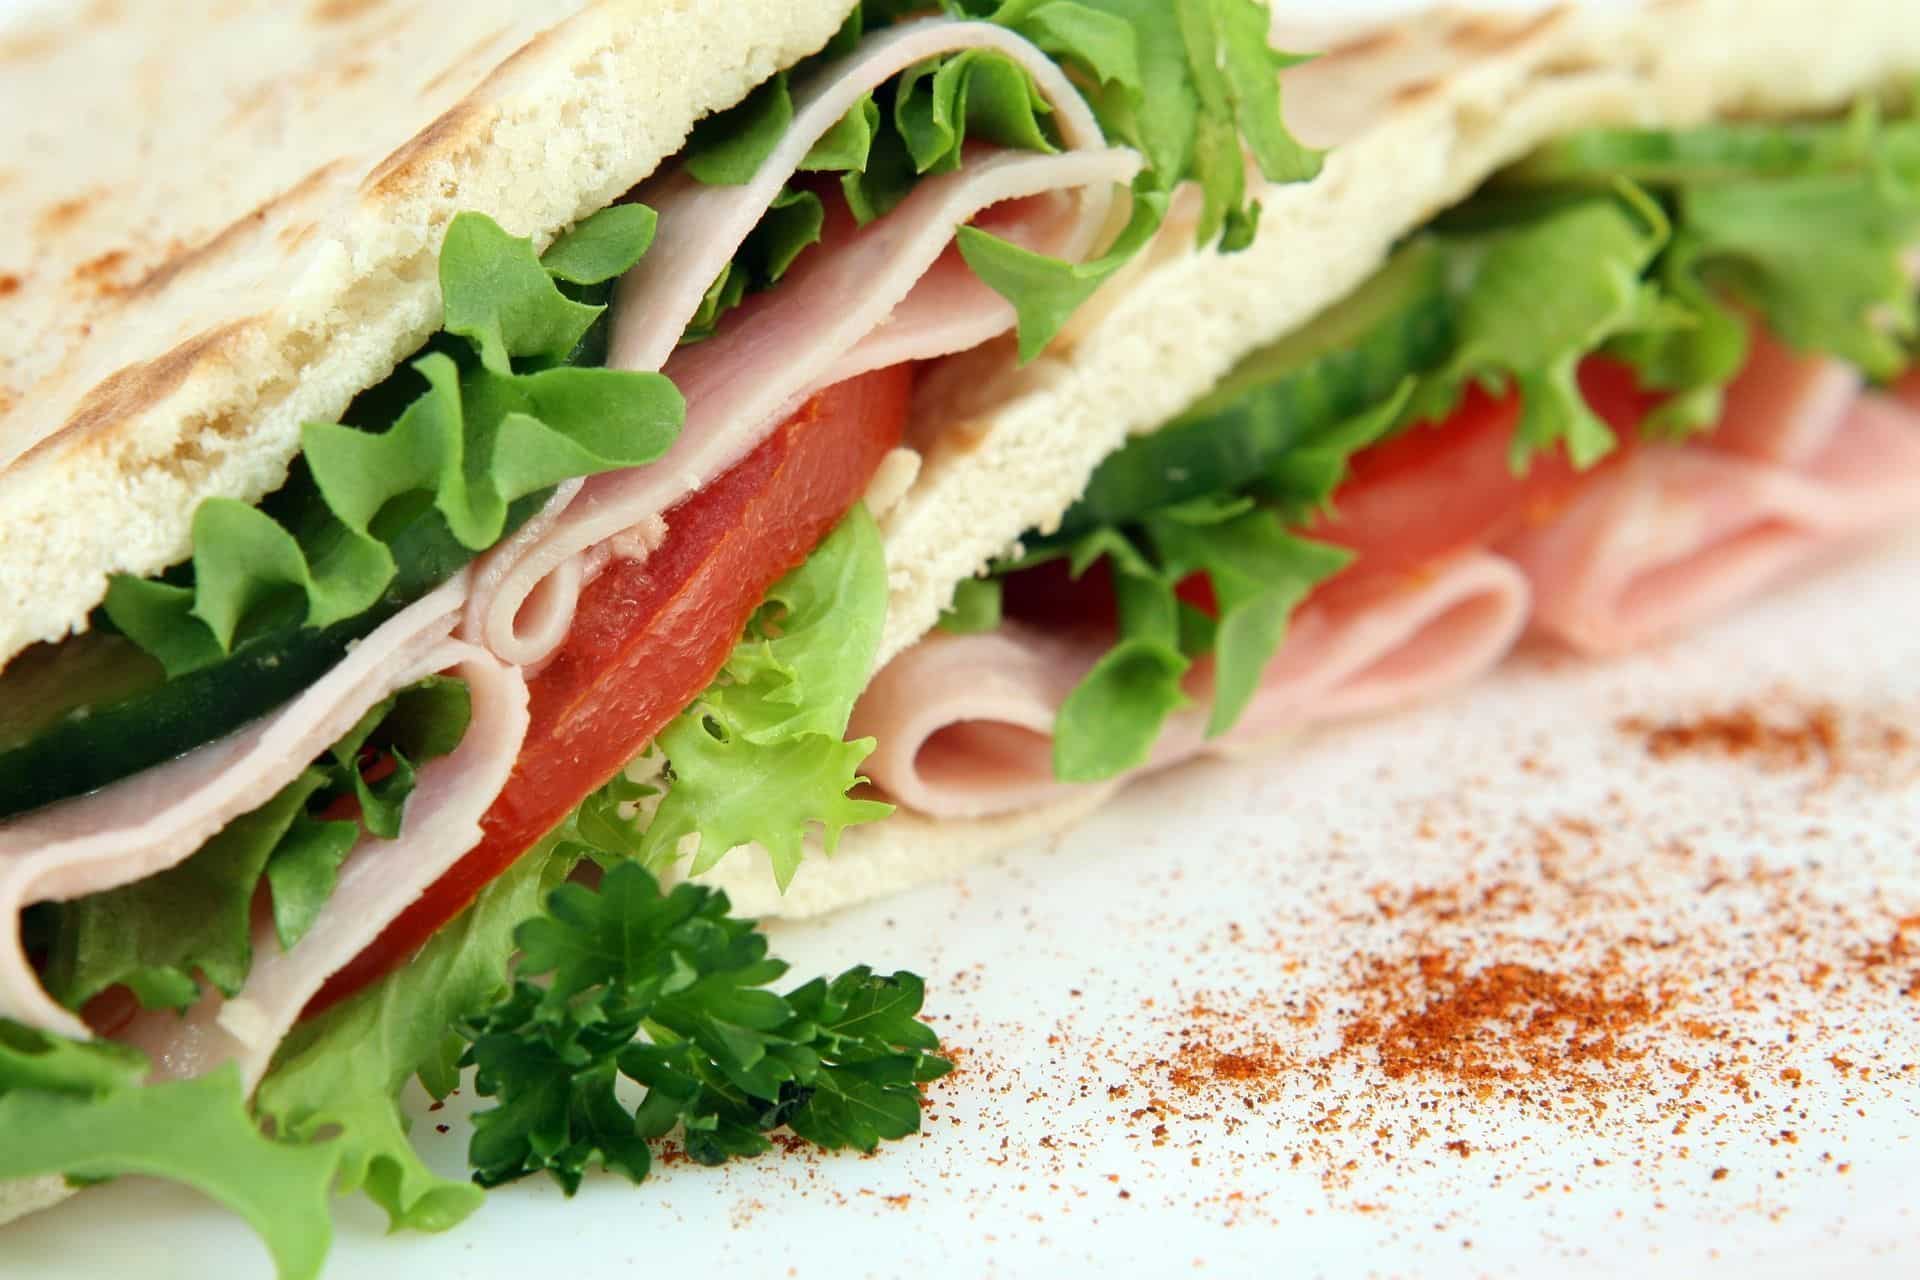 Aprenda a fazer sanduíches leves e saudáveis para preparar rapidamente